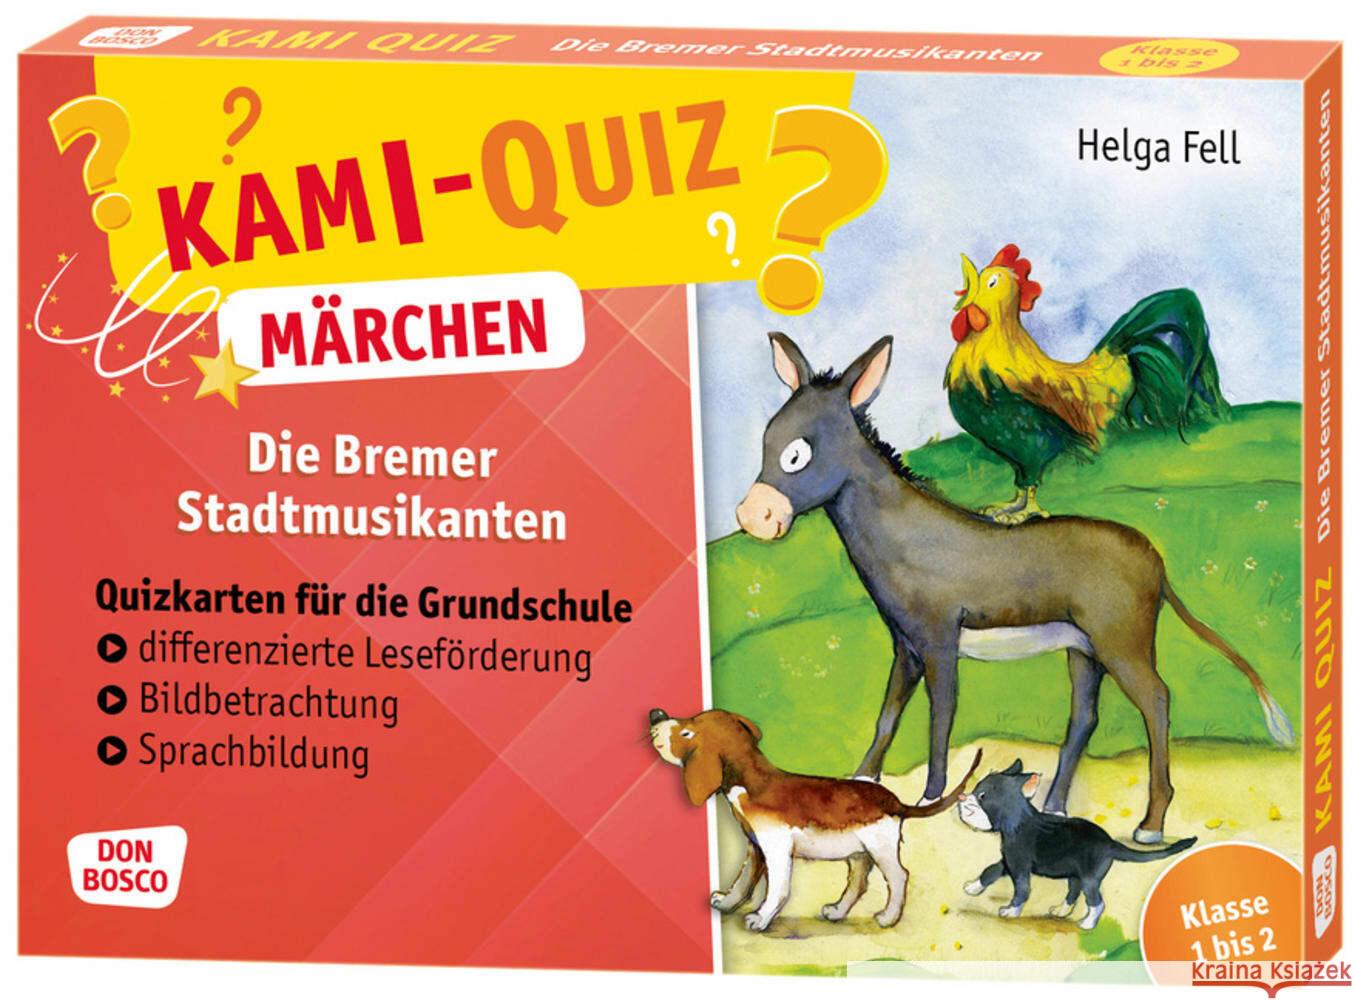 Kami-Quiz Märchen: Die Bremer Stadtmusikanten Fell, Helga 4260179516856 Don Bosco Medien